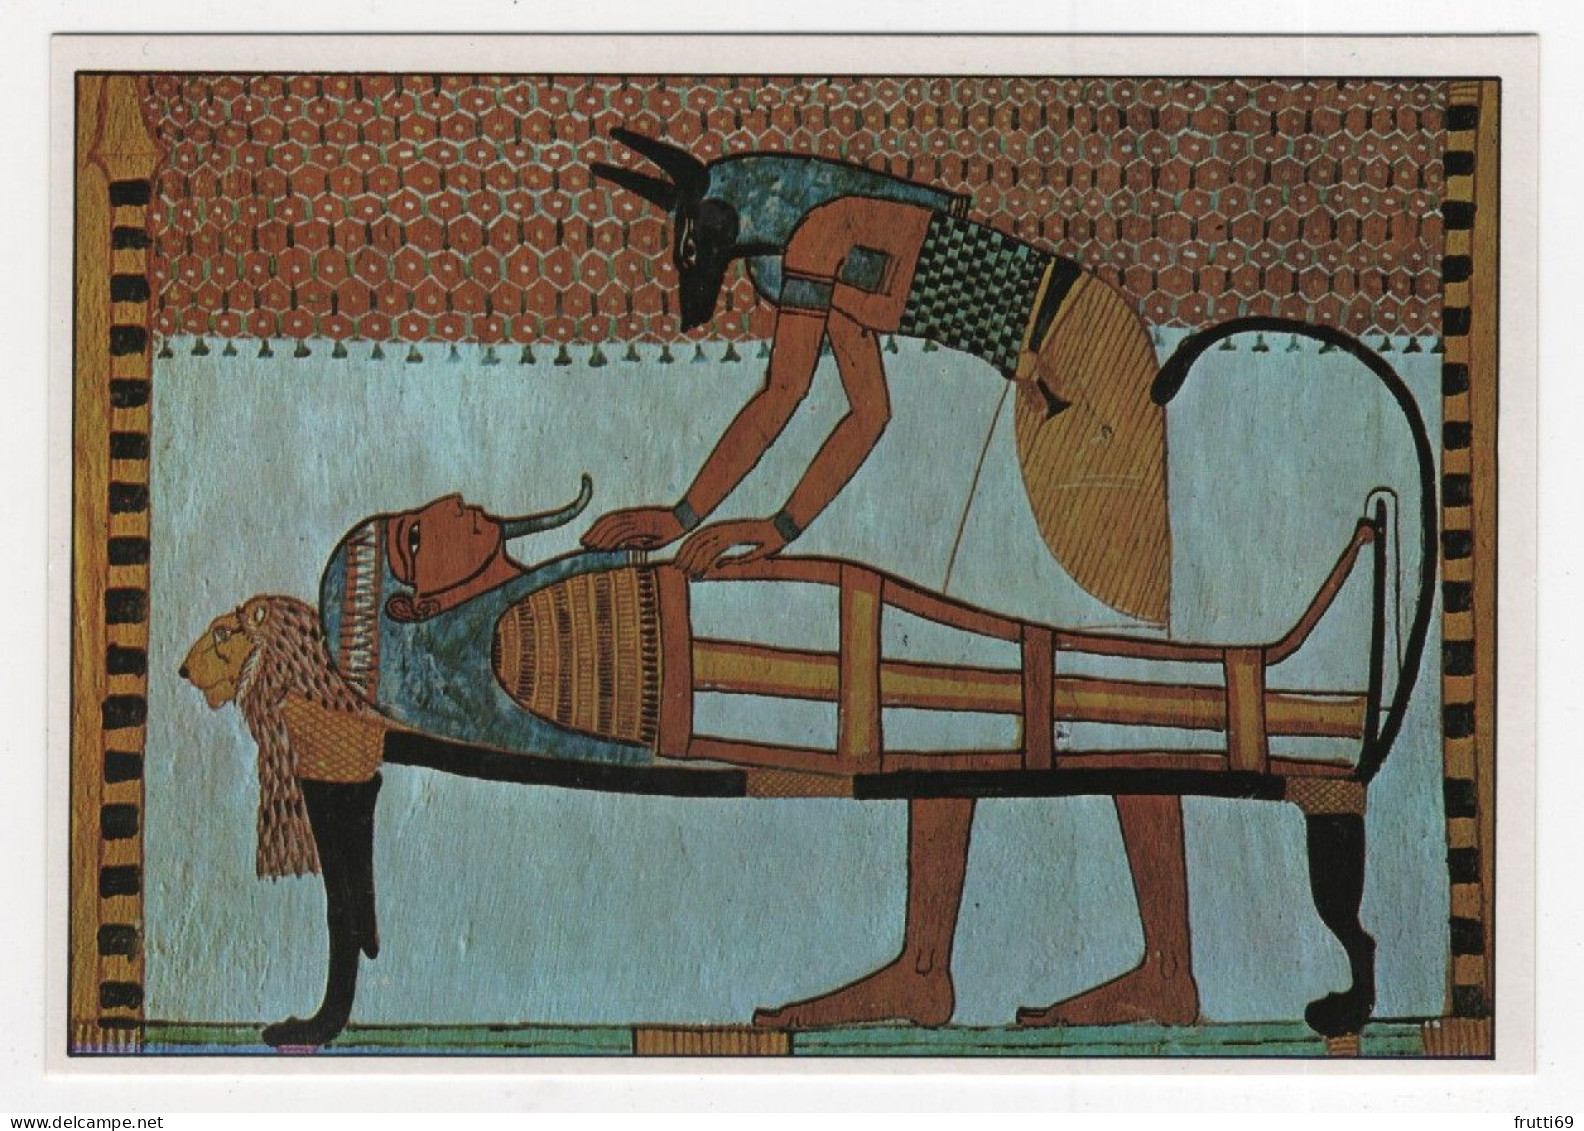 AK 210283 ART / PAINTING ... - Ägypten - Theben - Deir El-Medina - Grab Des Sennodiem -Anubis Mumifiziert Einen Leichnam - Antiek